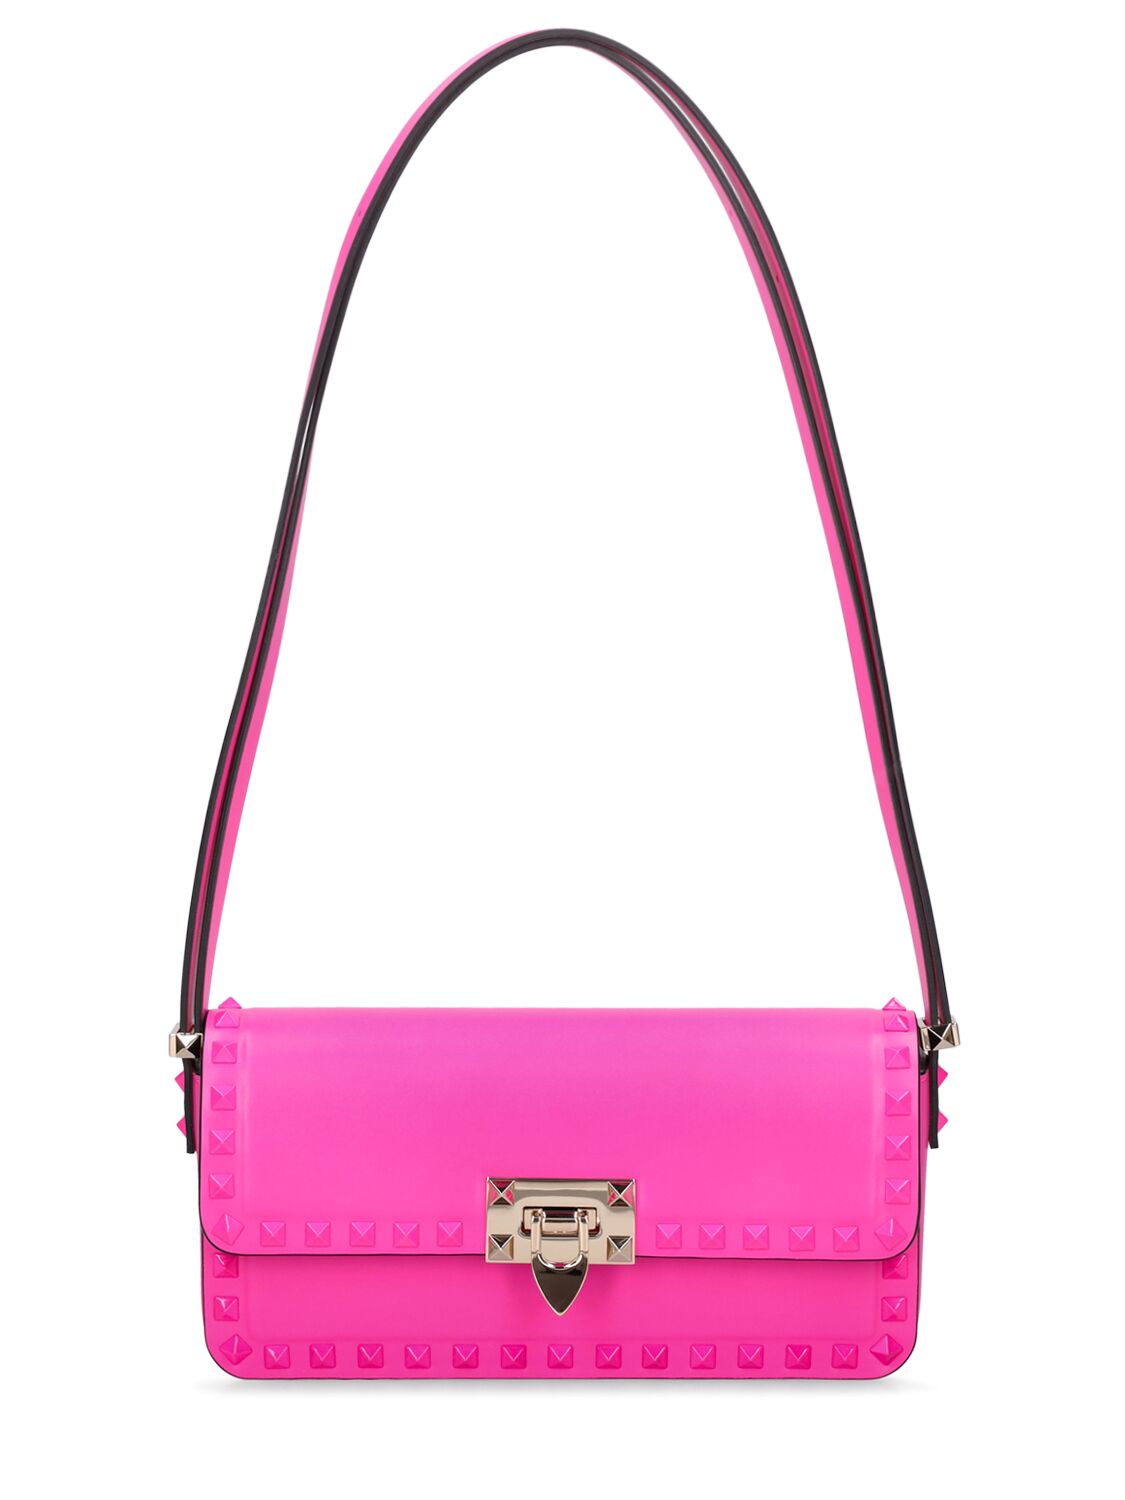 Valentino Garavani Rockstud Leather Shoulder Bag In Pp Pink